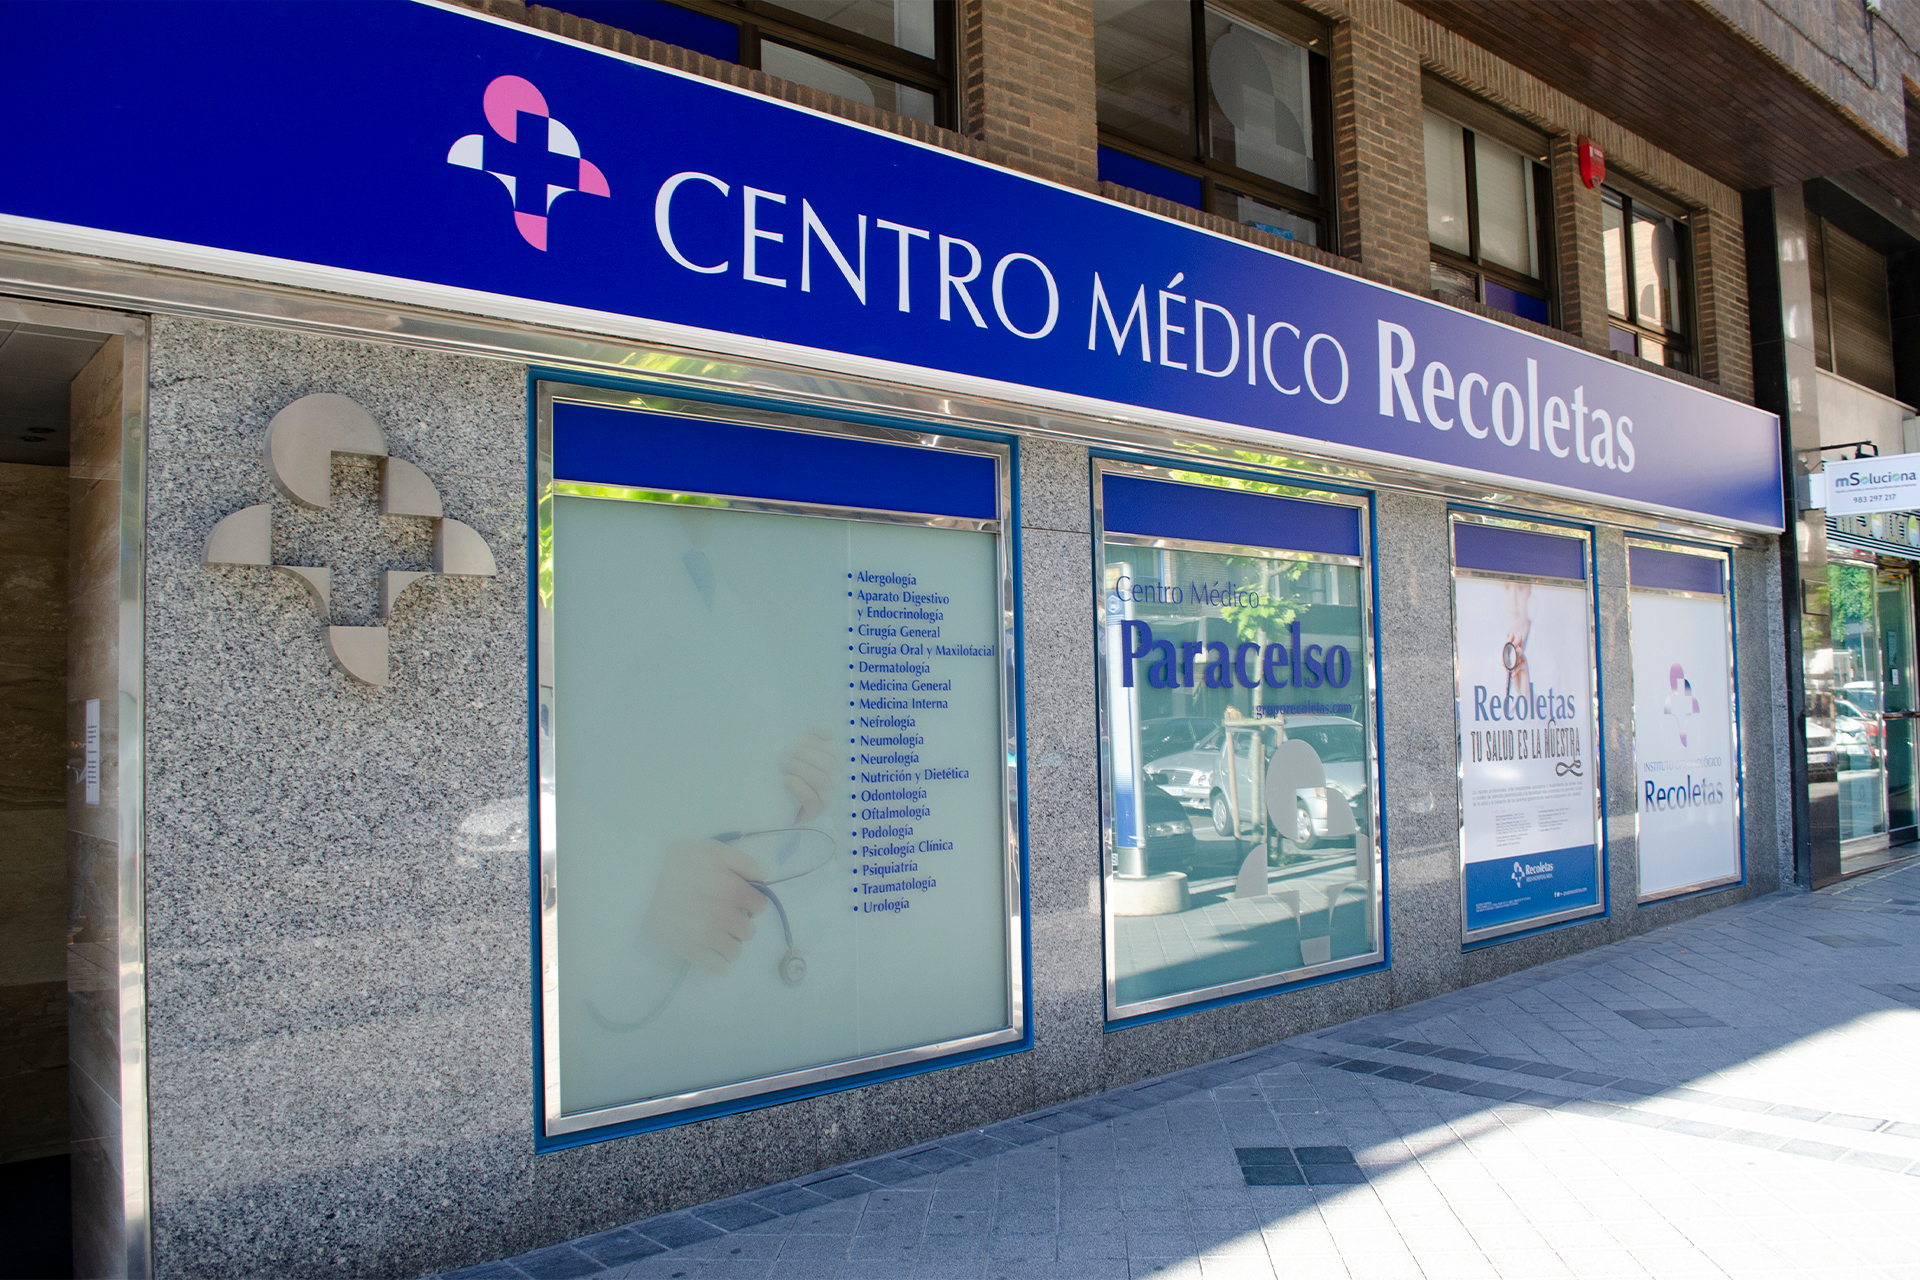 Centro Médico Recoletas Paracelso - Grupo Recoletas